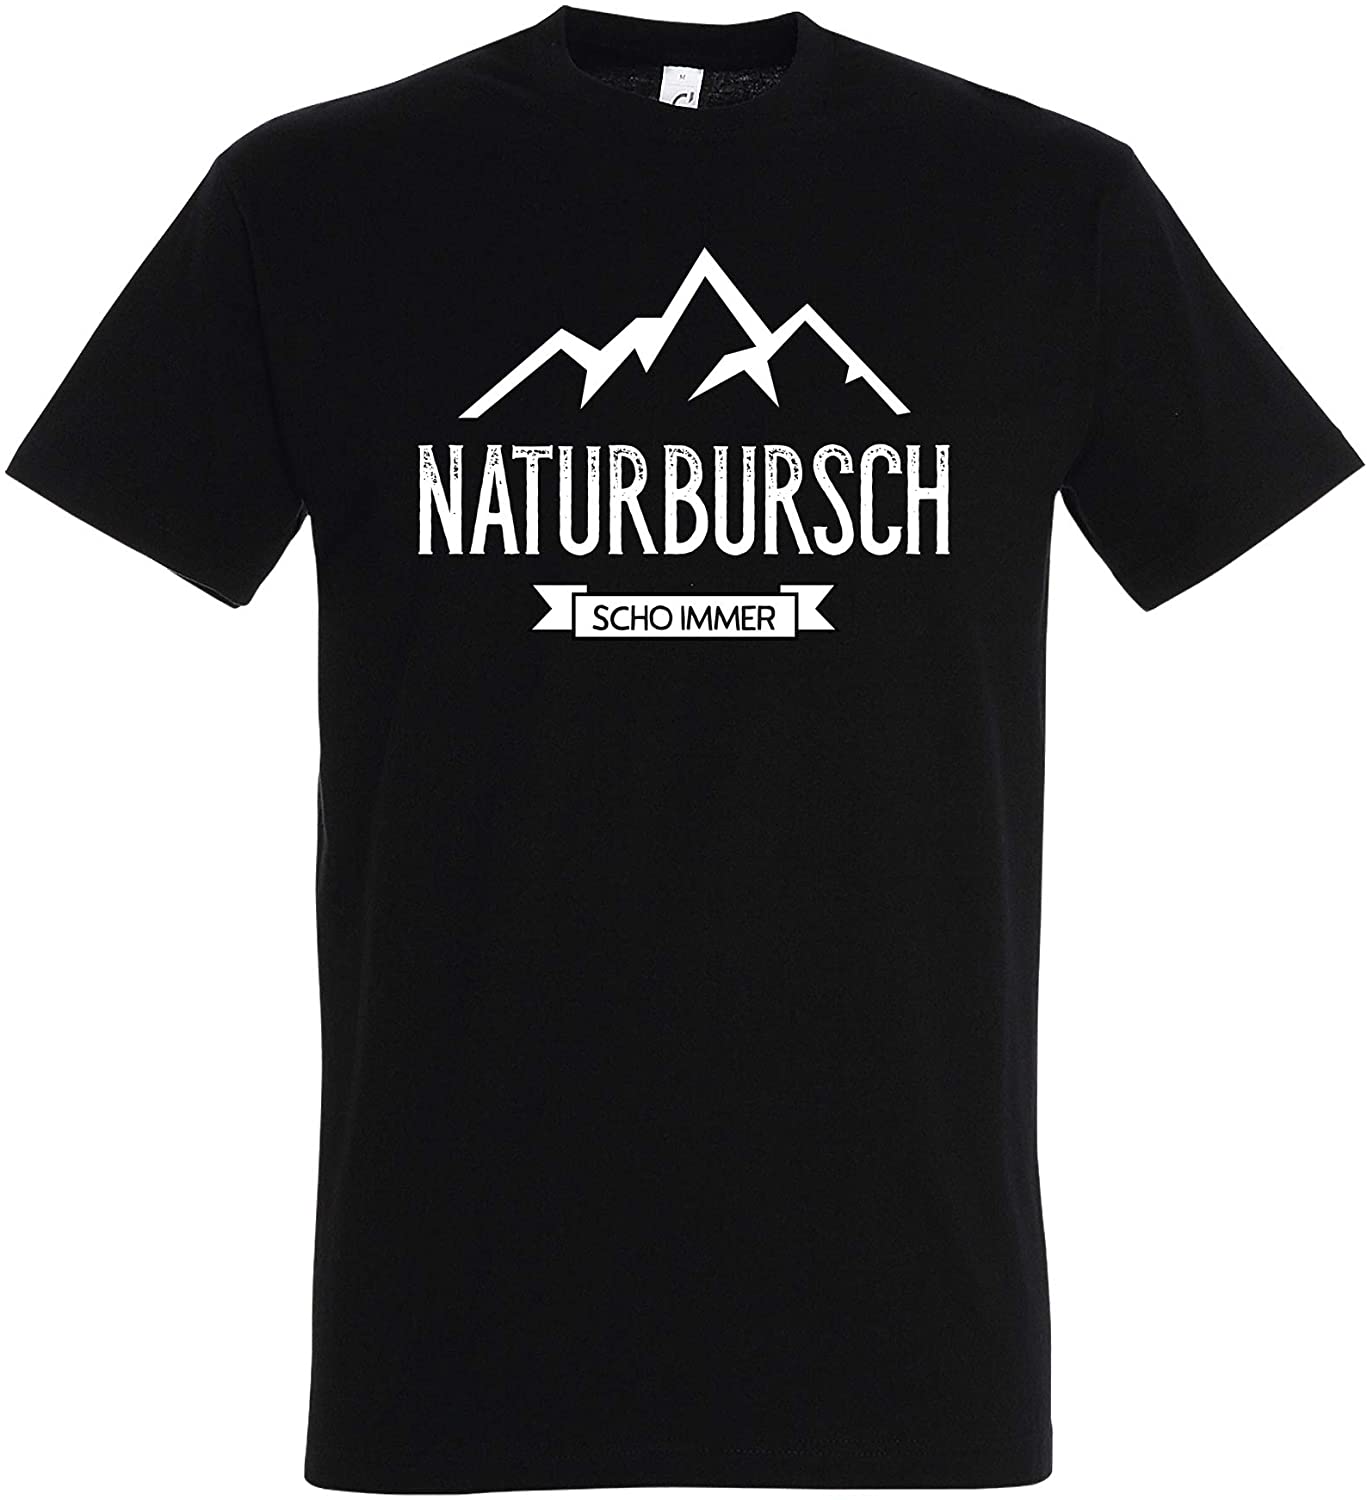 T-Shirt Naturbursch Scho Immer, schwarz mit weissem Aufdruck, Berge, Wandern, Natur